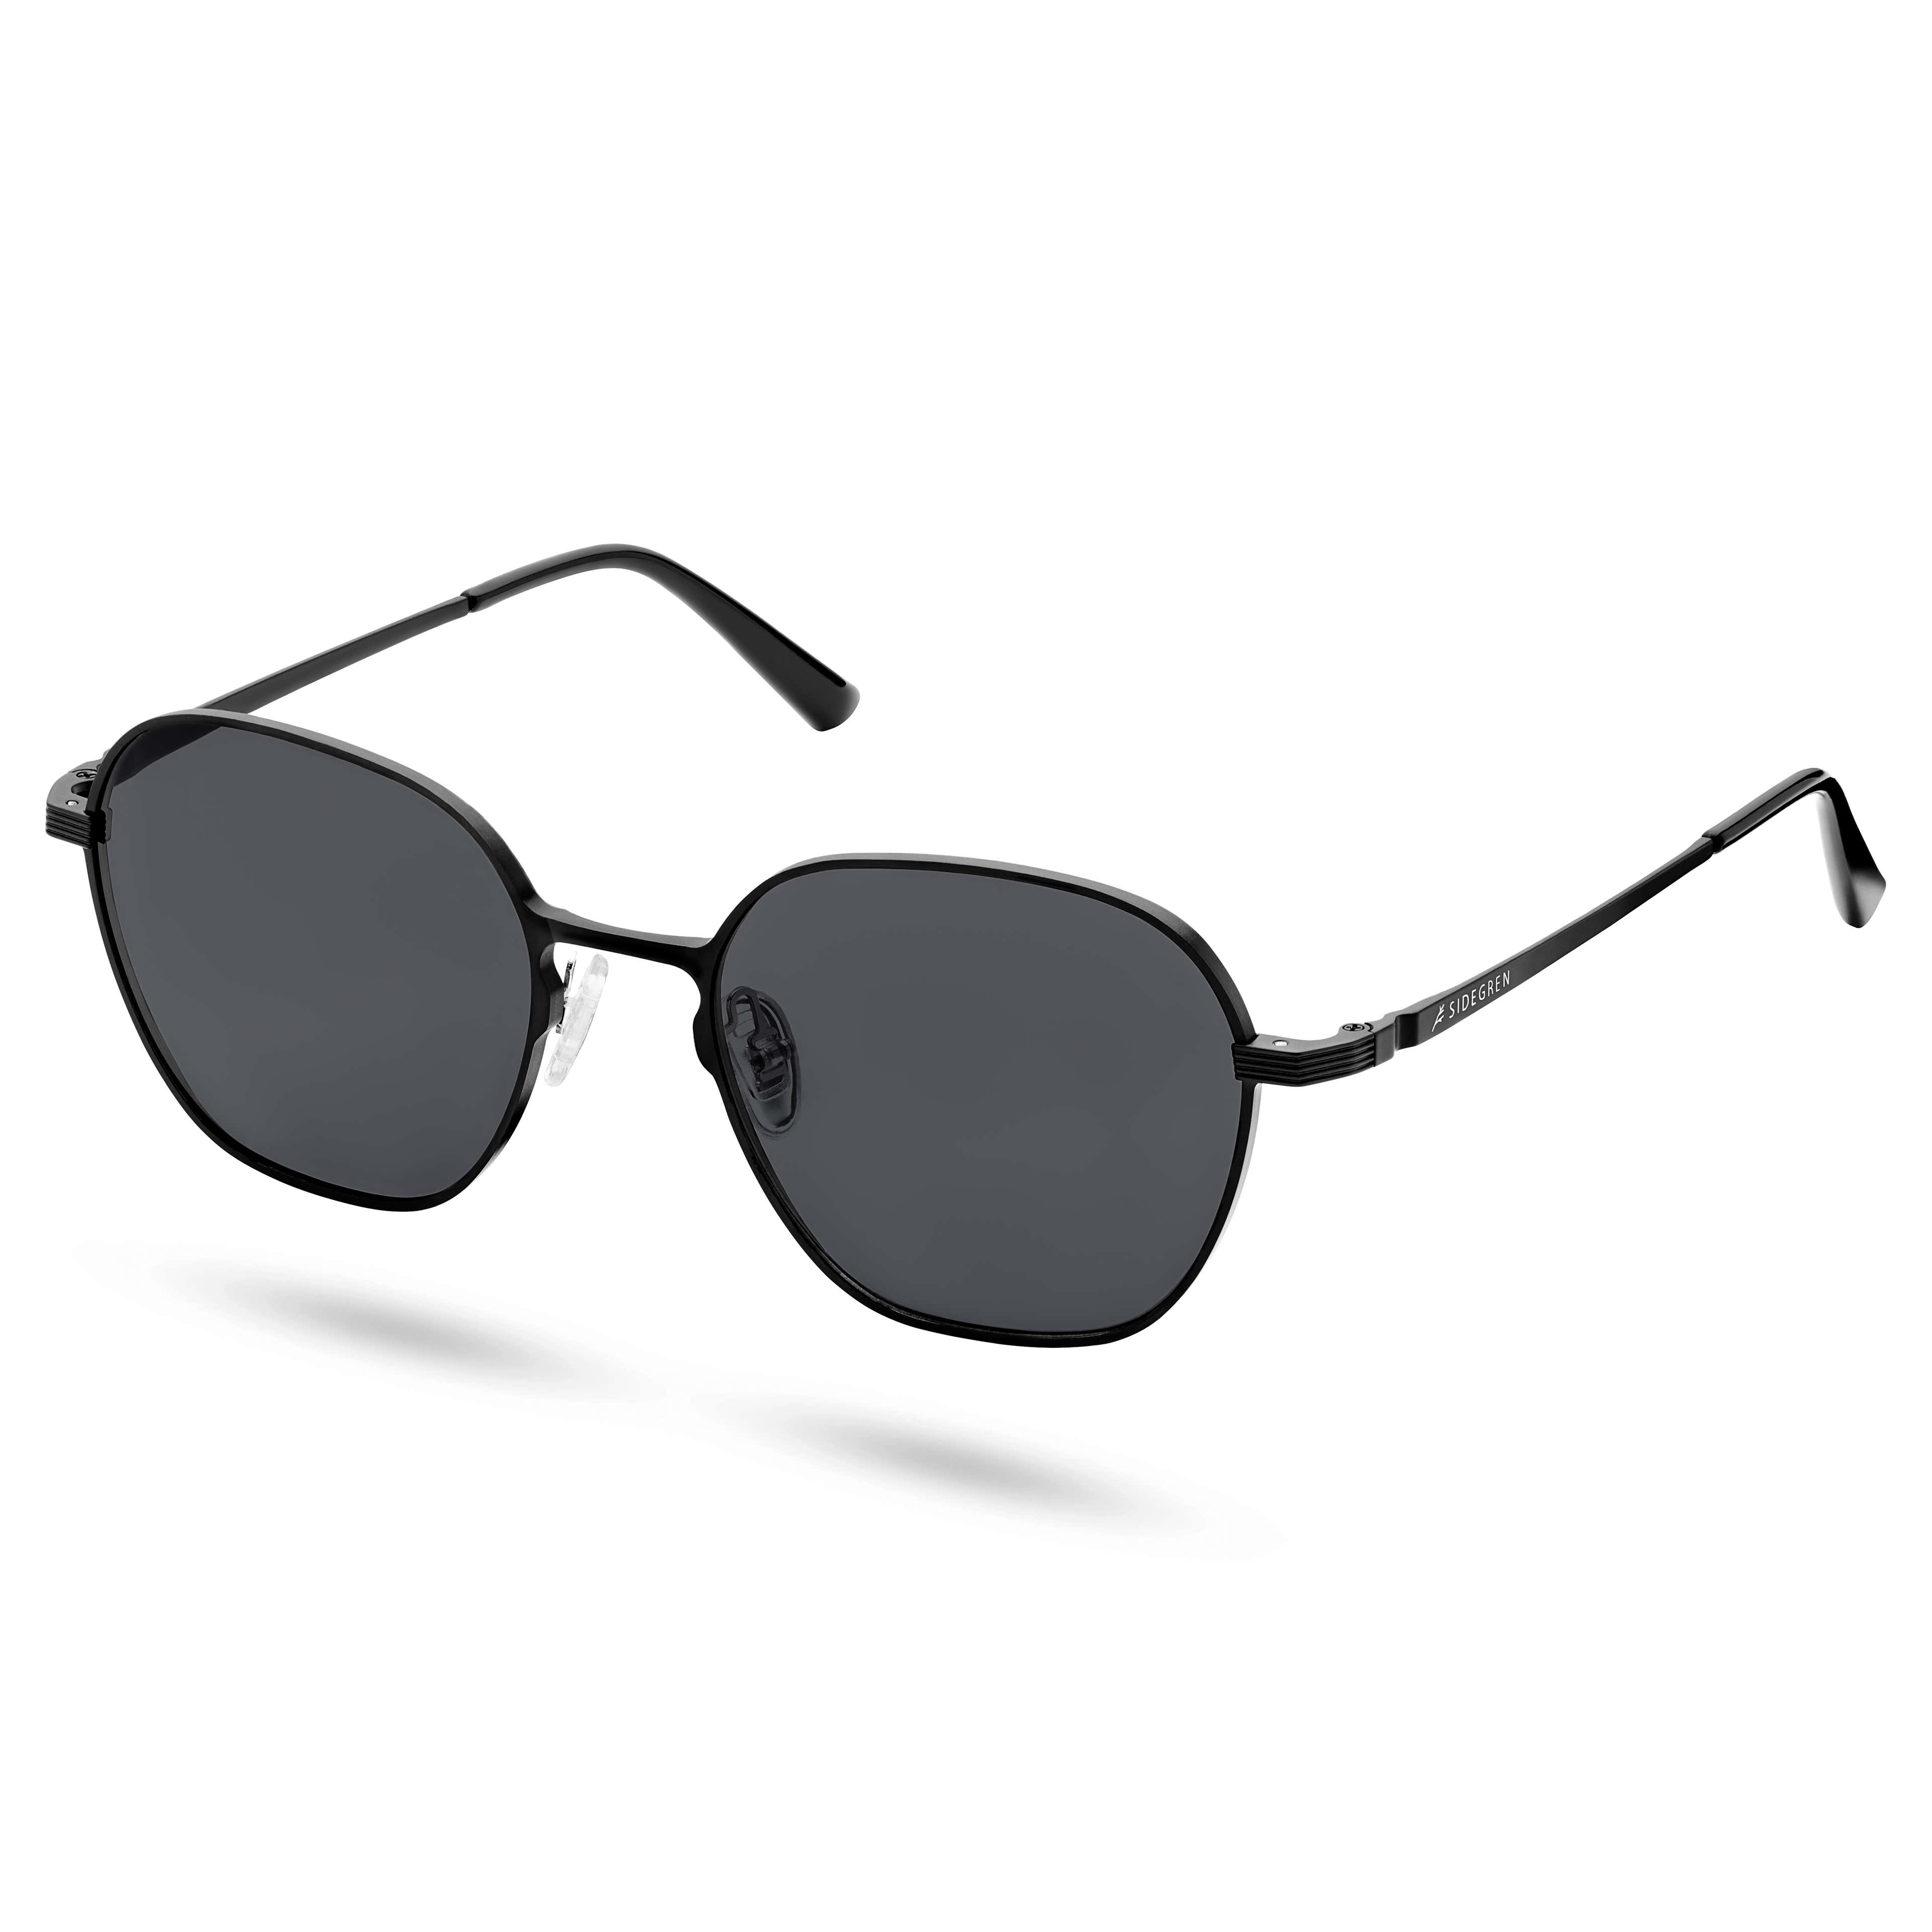 Black Polarized Hexagonal Titanium Sunglasses